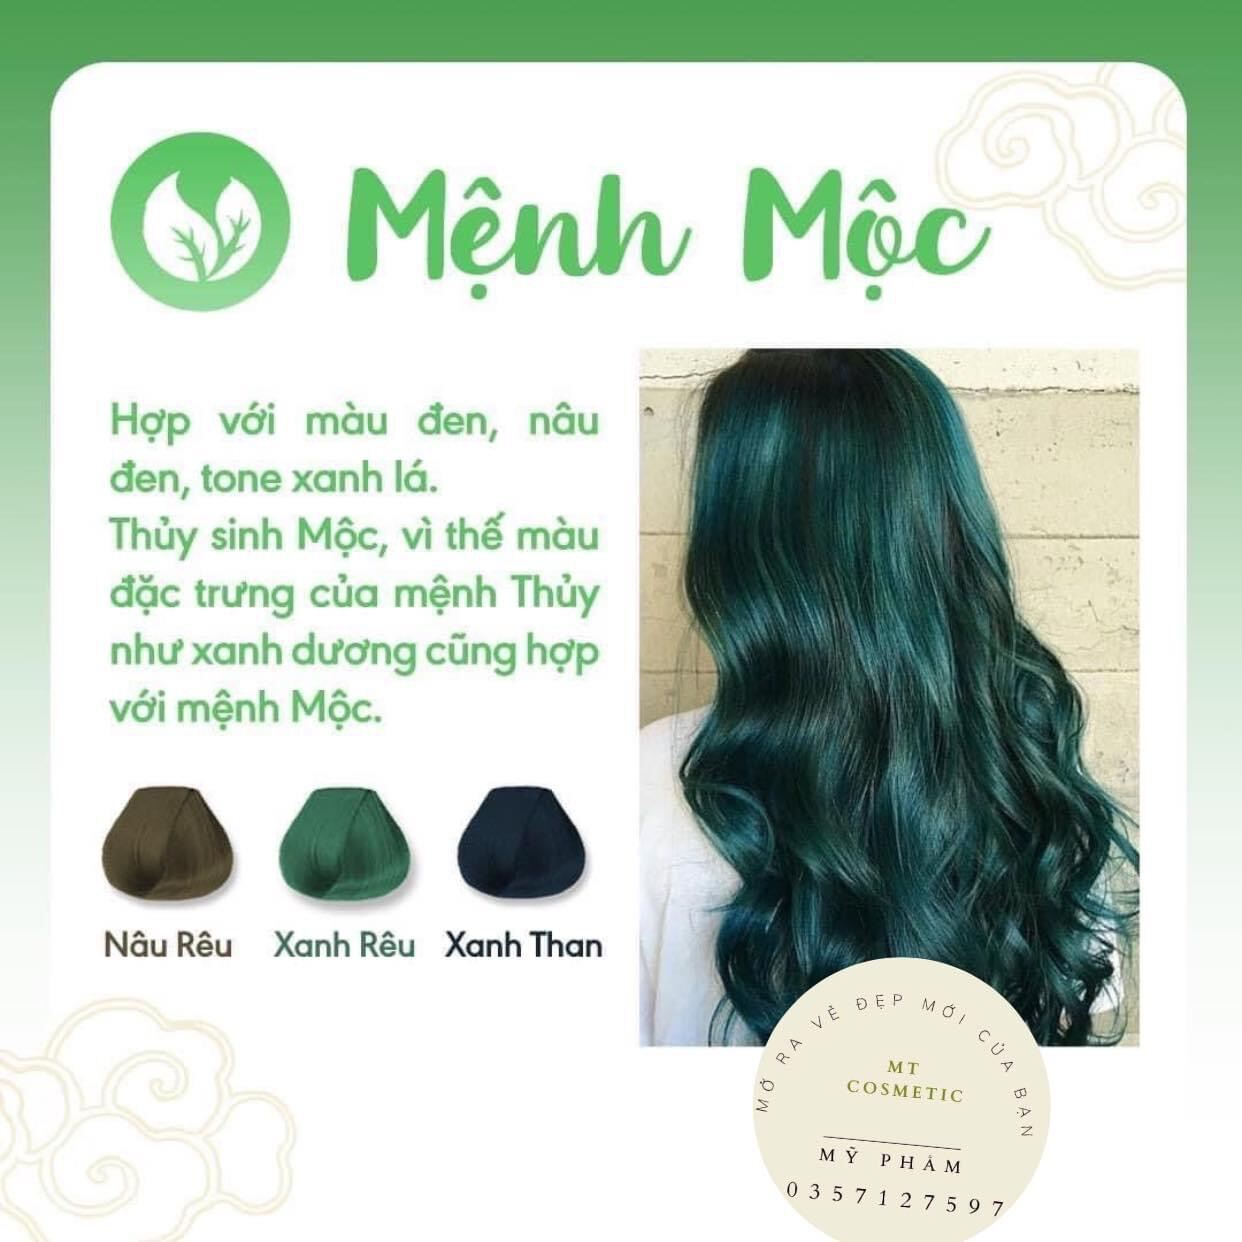 Thuốc nhuộm tóc xanh rêu, xanh lá sẽ khiến tóc của bạn trở nên tươi trẻ và nổi bật hơn bao giờ. Với sự kết hợp độc đáo của màu sắc, bạn có thể tạo nên phong cách hoàn toàn mới cho mình. Hãy xem hình ảnh để tìm thêm những ý tưởng tuyệt vời cho kiểu tóc của bạn.